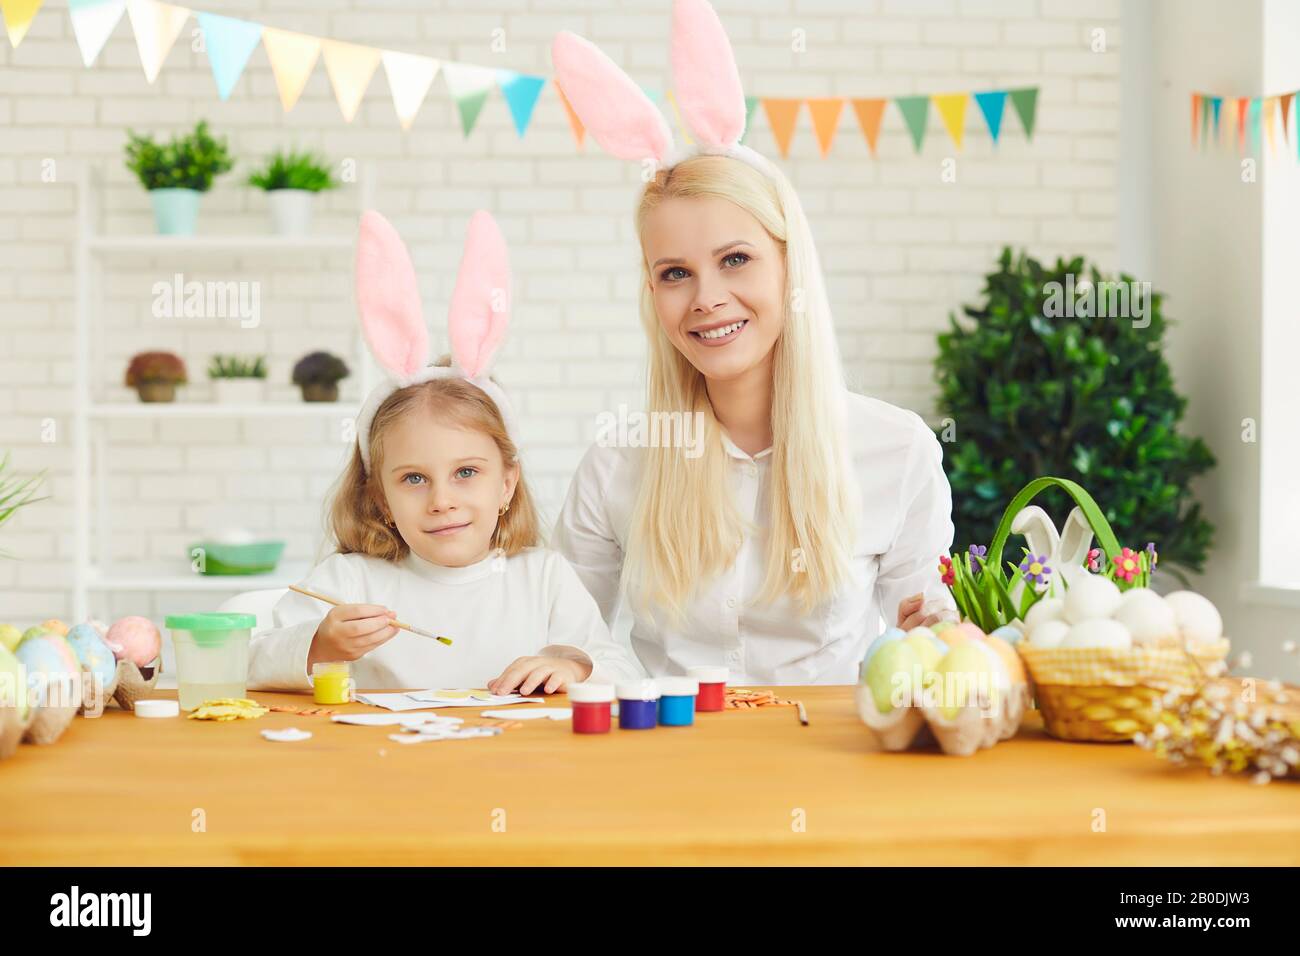 Frohe ostern. Tochter und Mutter mit Kaninchenohren schmücken an einem Tisch sitzende Ostereier Stockfoto